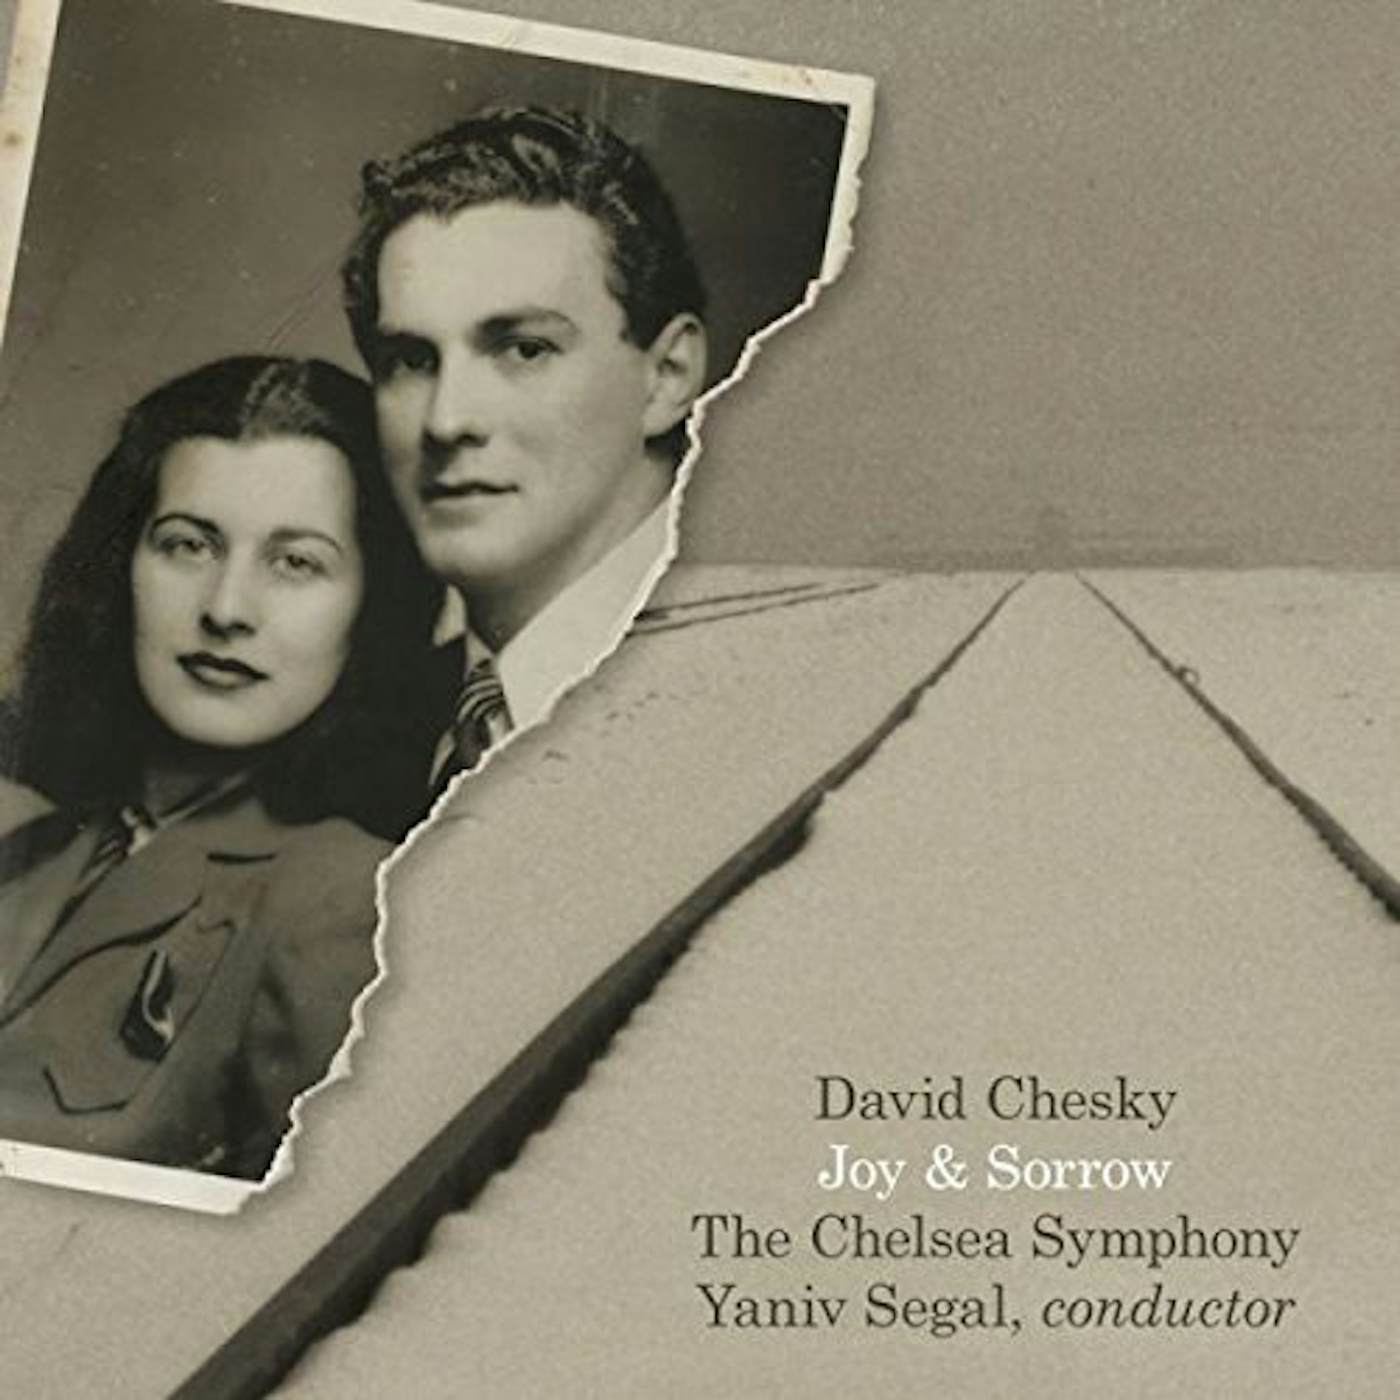 David Chesky JOY & SORROW CD